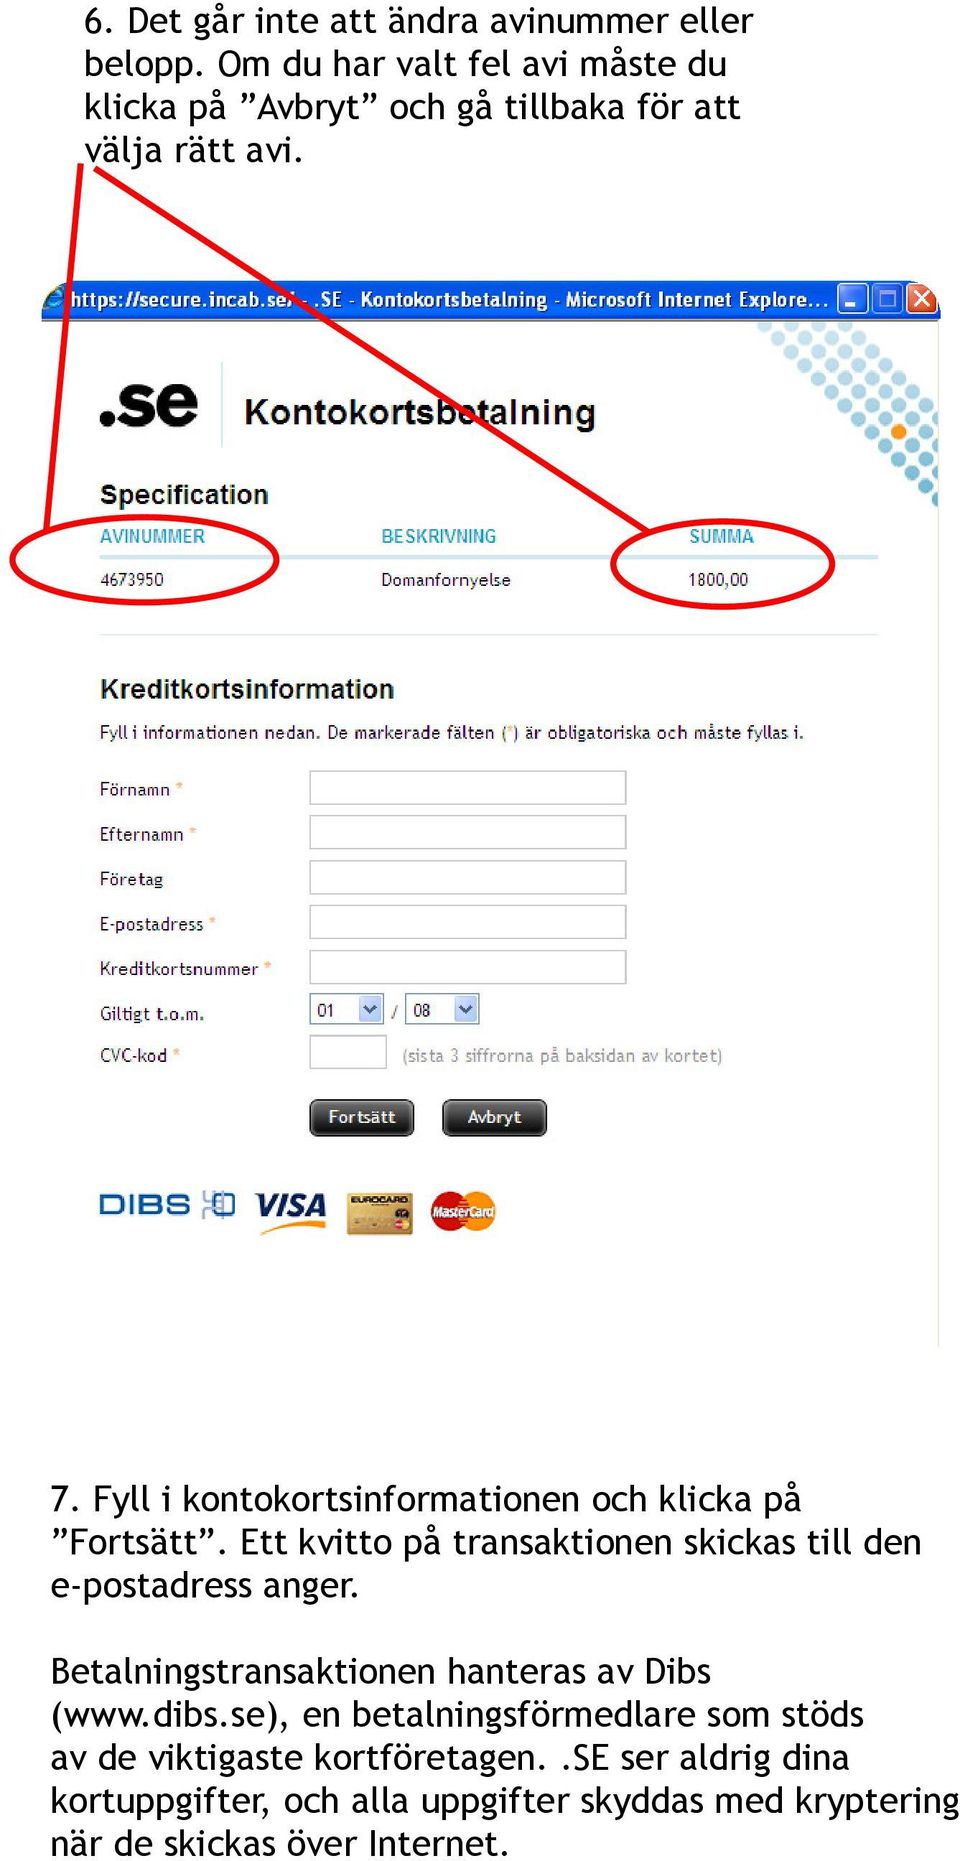 Fyll i kontokortsinformationen och klicka på Fortsätt. Ett kvitto på transaktionen skickas till den e-postadress anger.